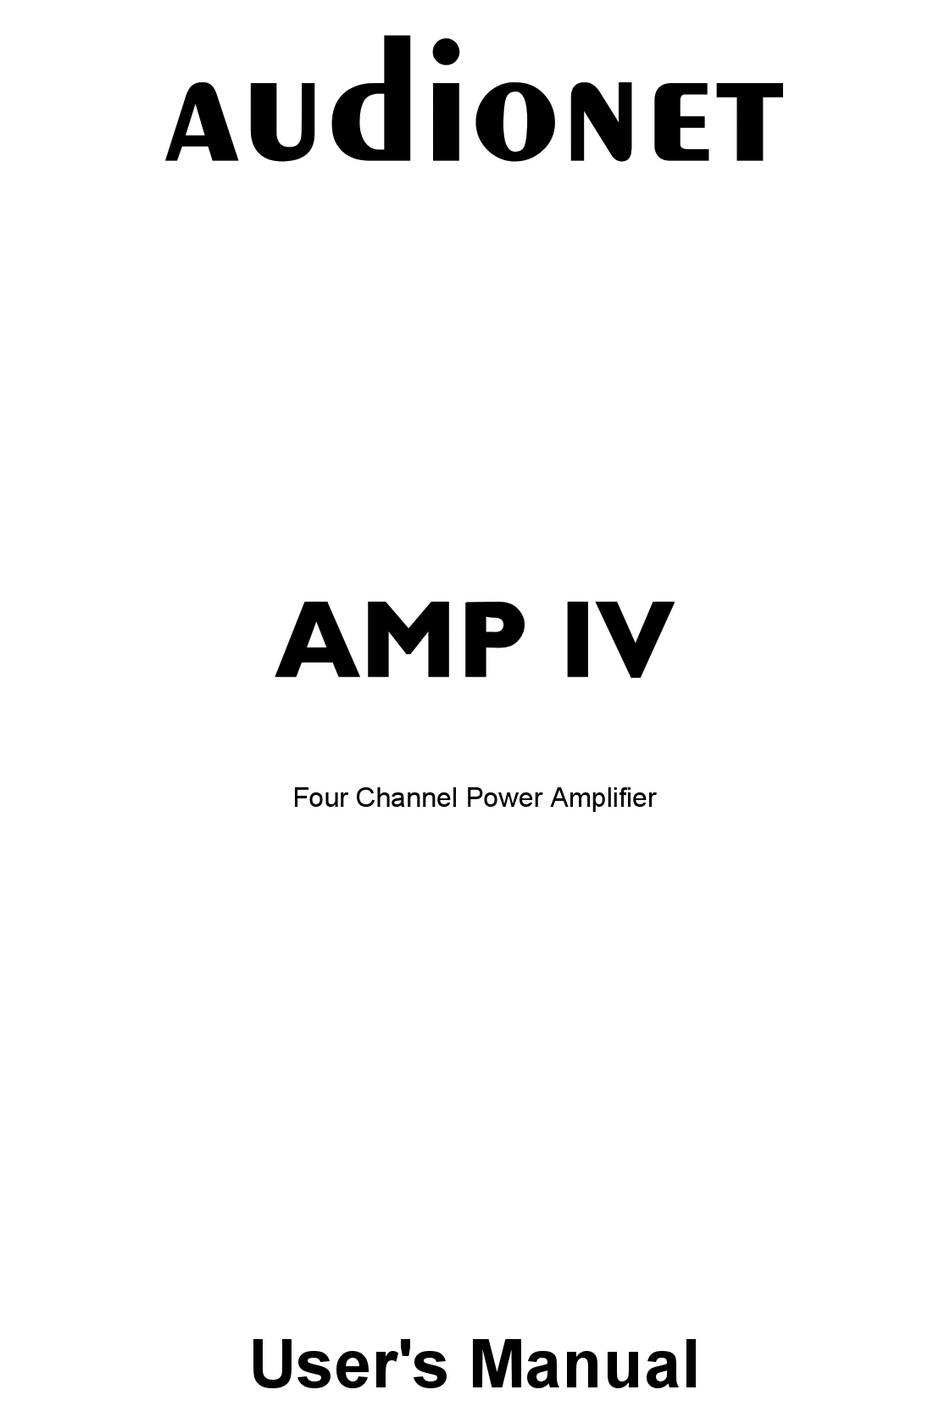 Audionet AMP IV